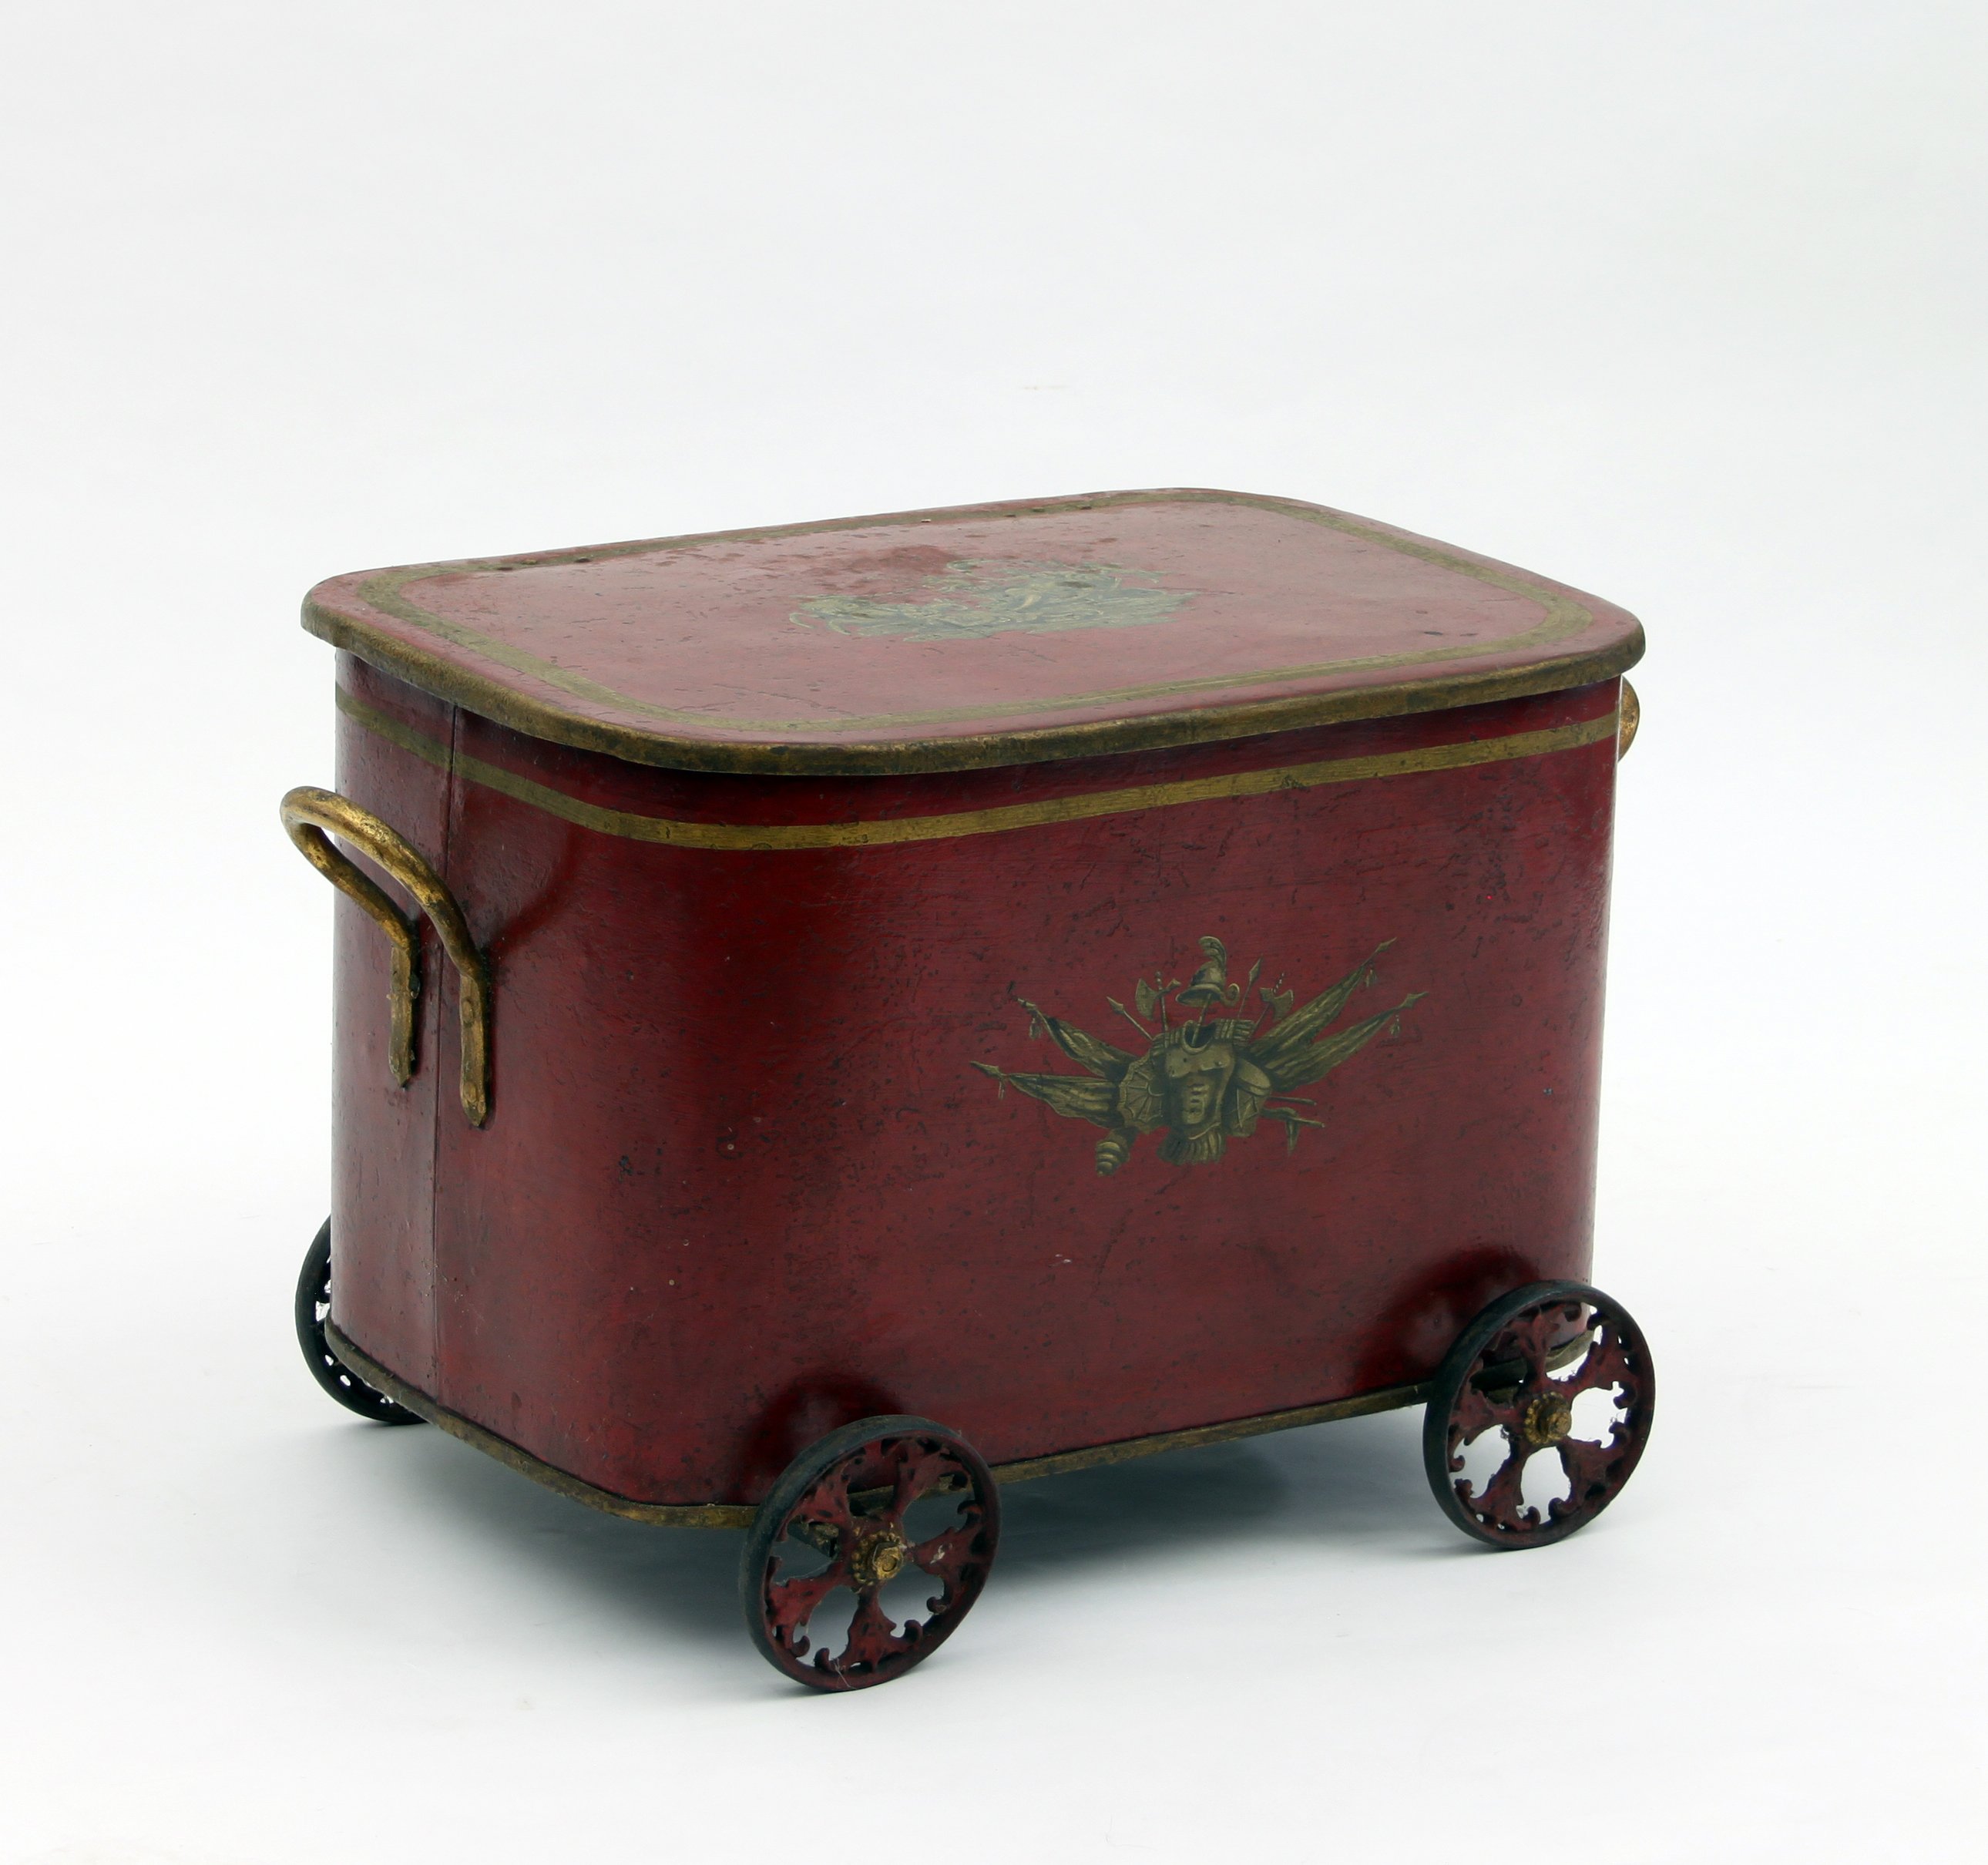 A red japanned log bin on wheels, 55.75c